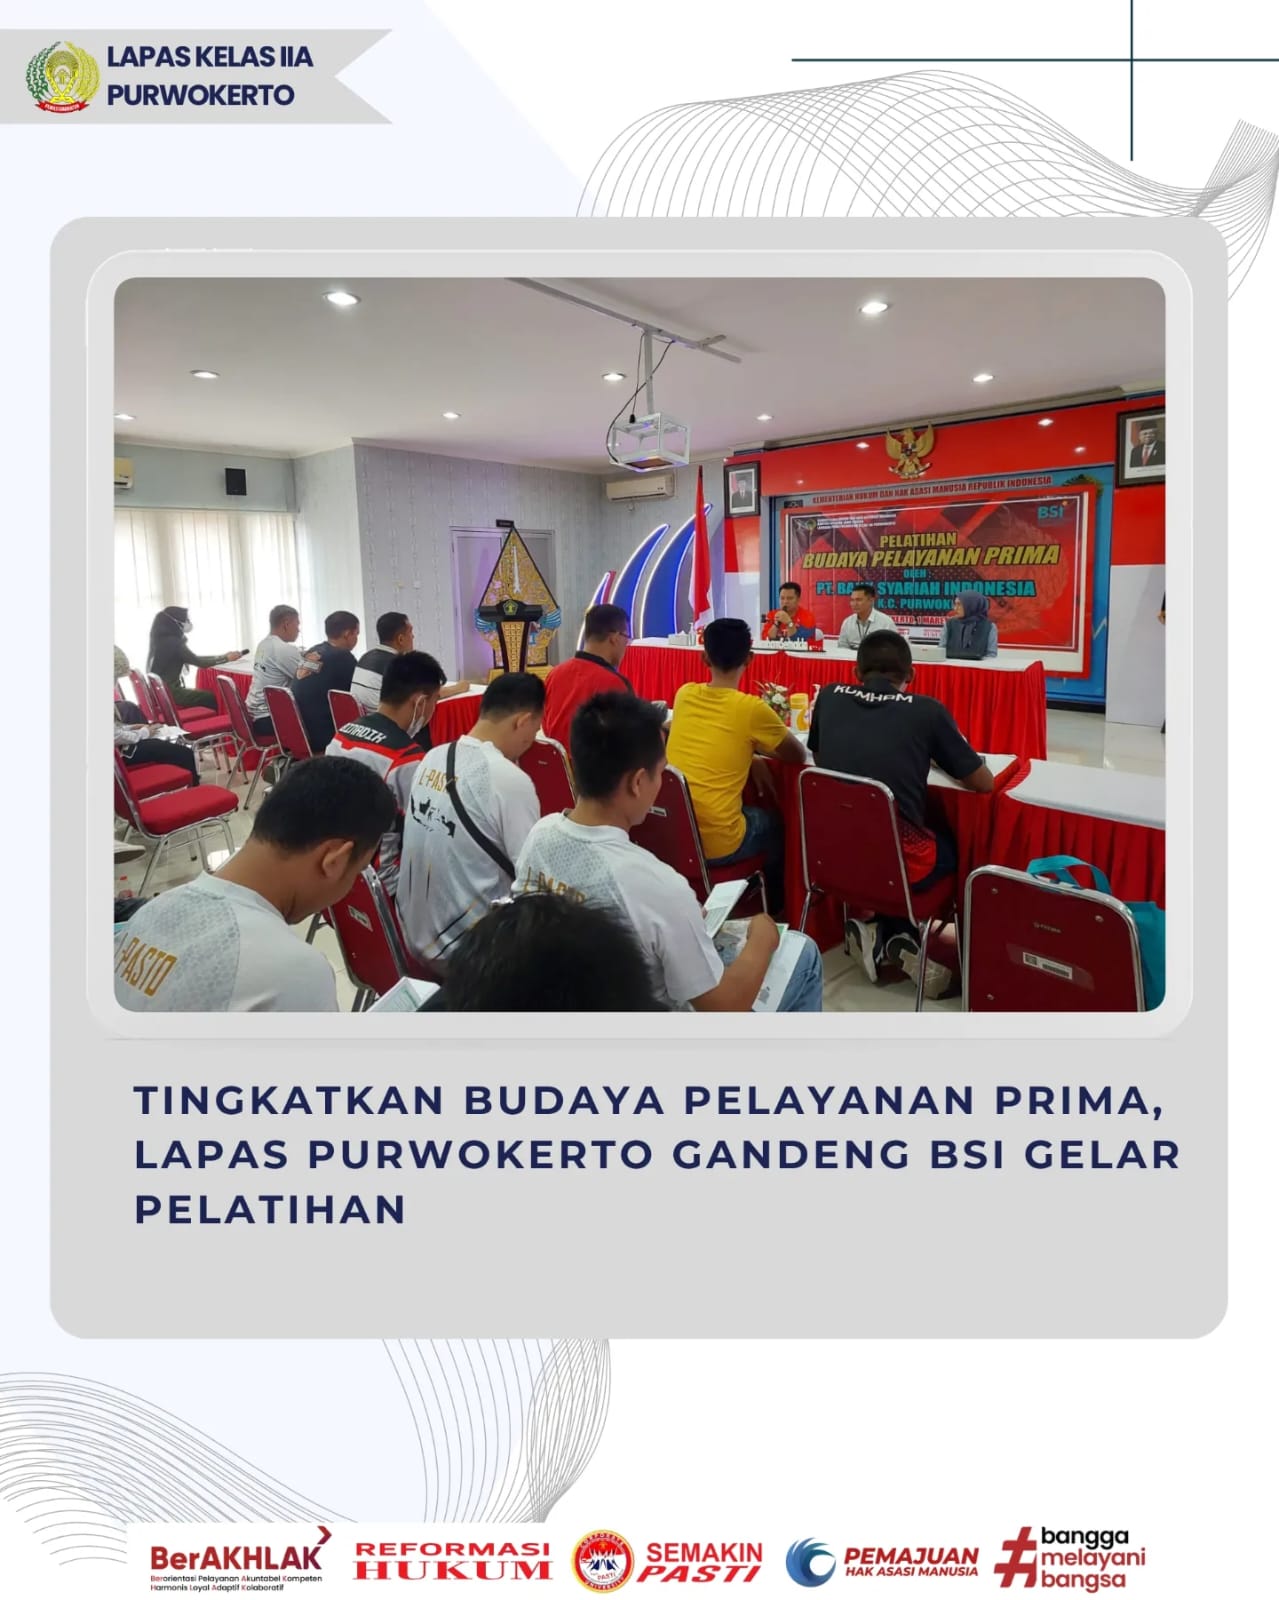 Tingkatkan Budaya Pelayanan Prima, Lapas Purwokerto Gandeng BSI Gelar Pelatihan